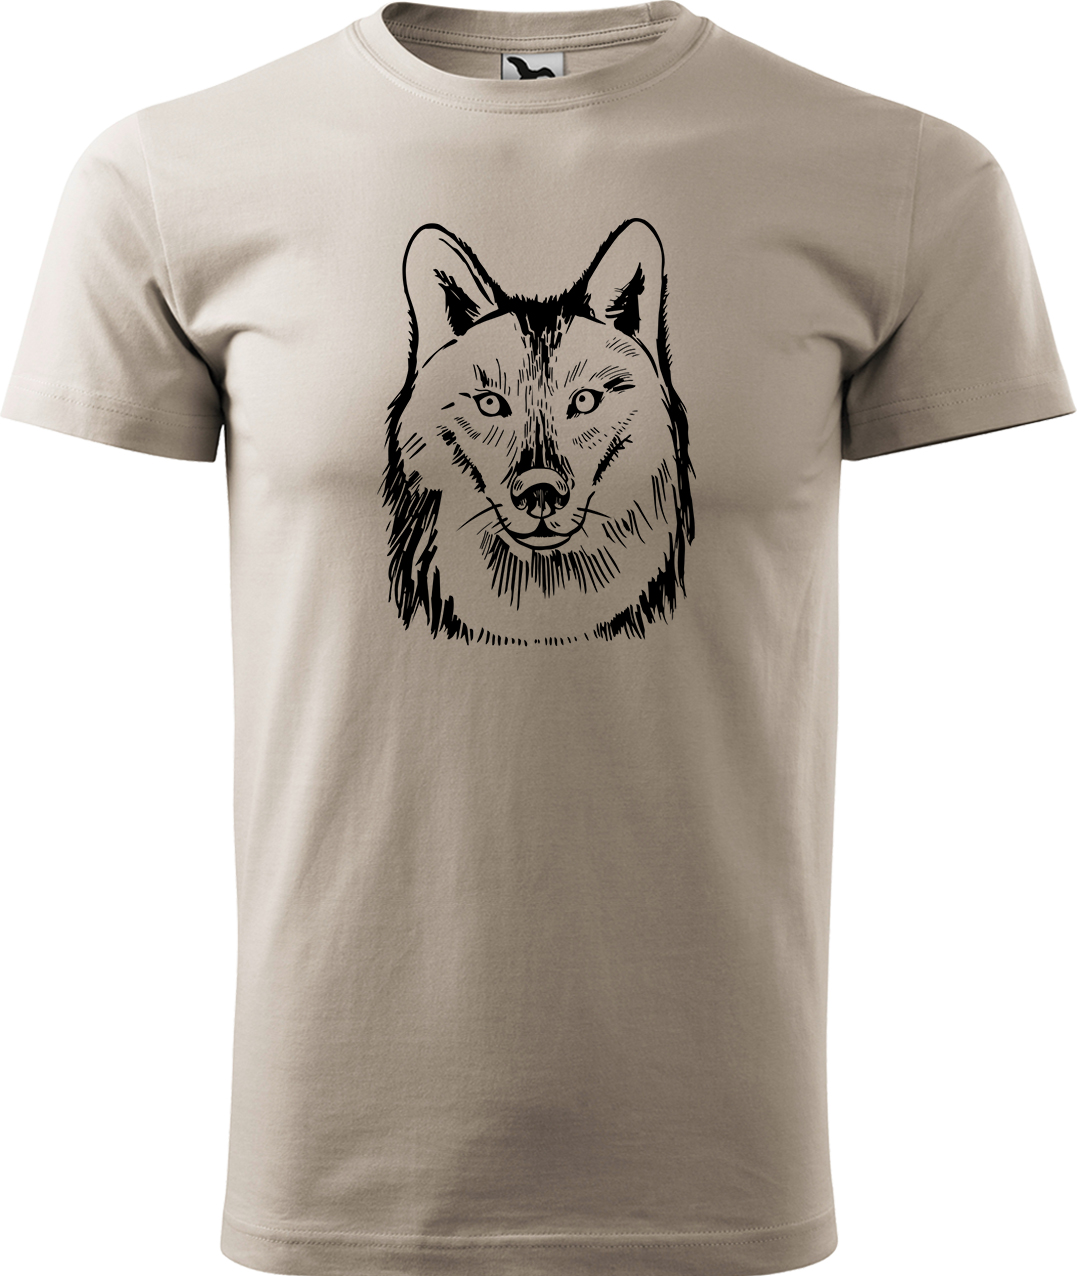 Pánské tričko s vlkem - Kresba vlka Velikost: S, Barva: Béžová (51), Střih: pánský